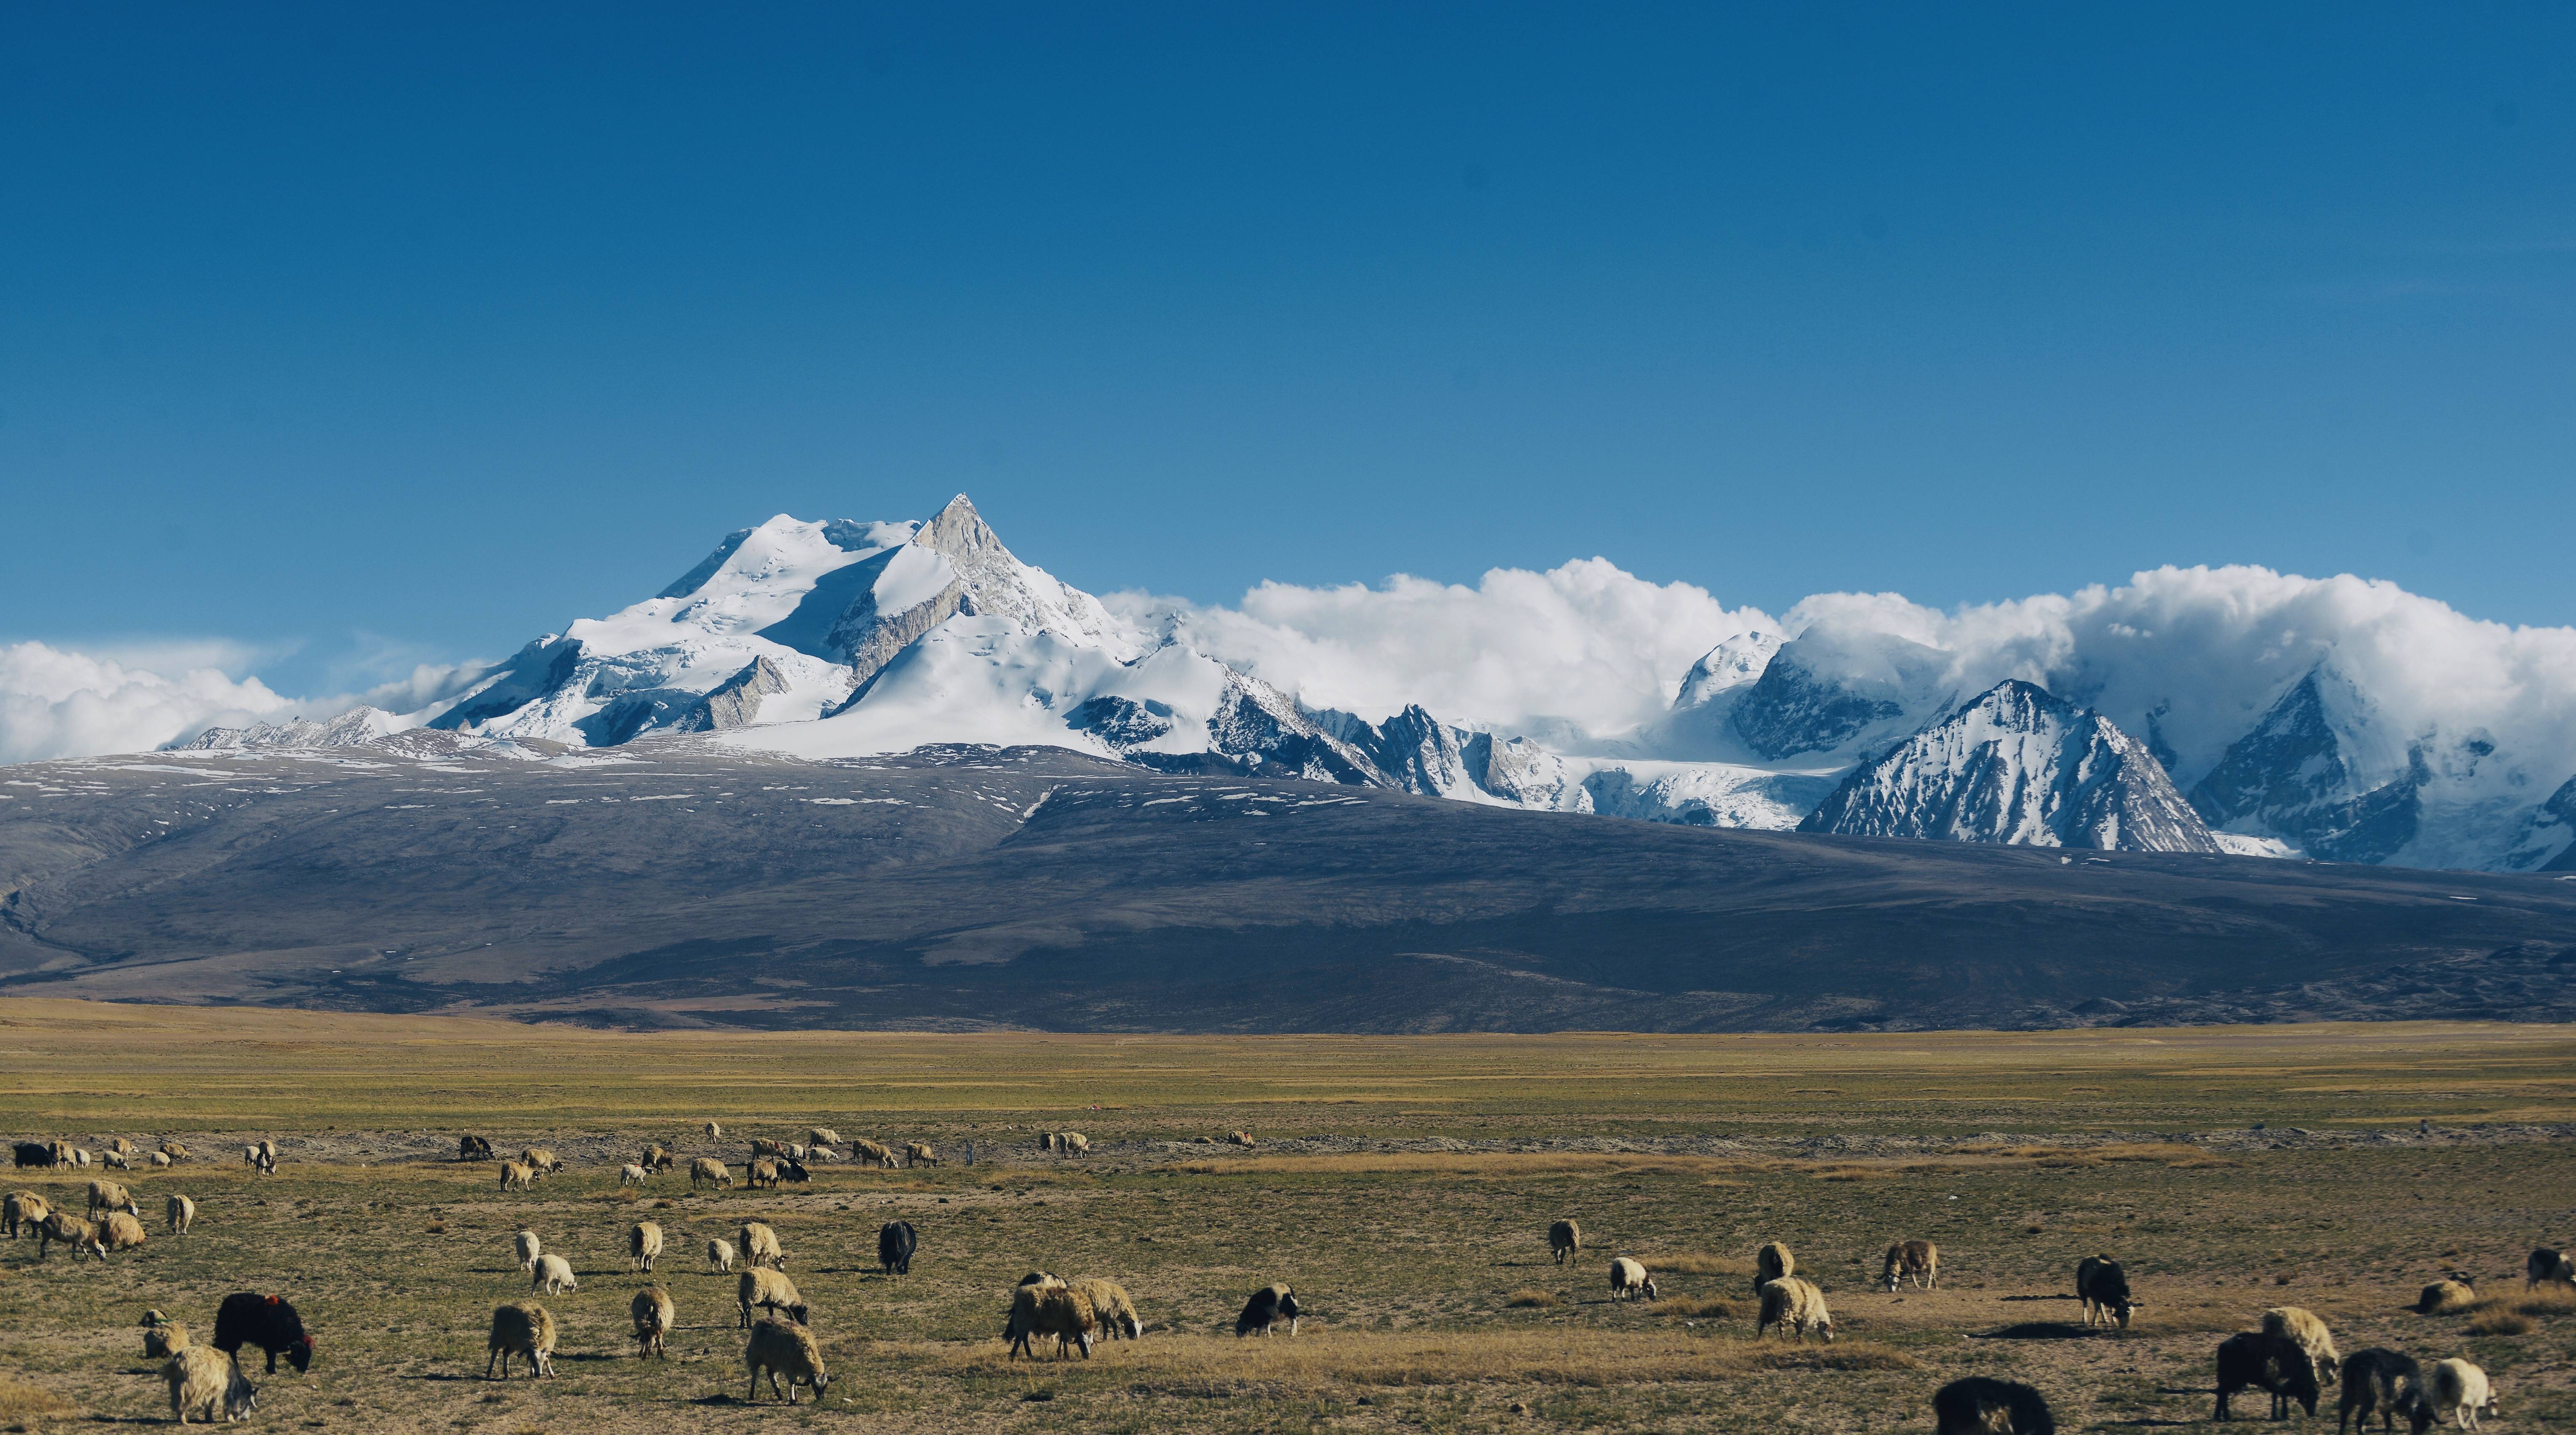 柒月新藏线旅行日记|雪域高原露营—露营佩枯措,遥望希夏邦马峰